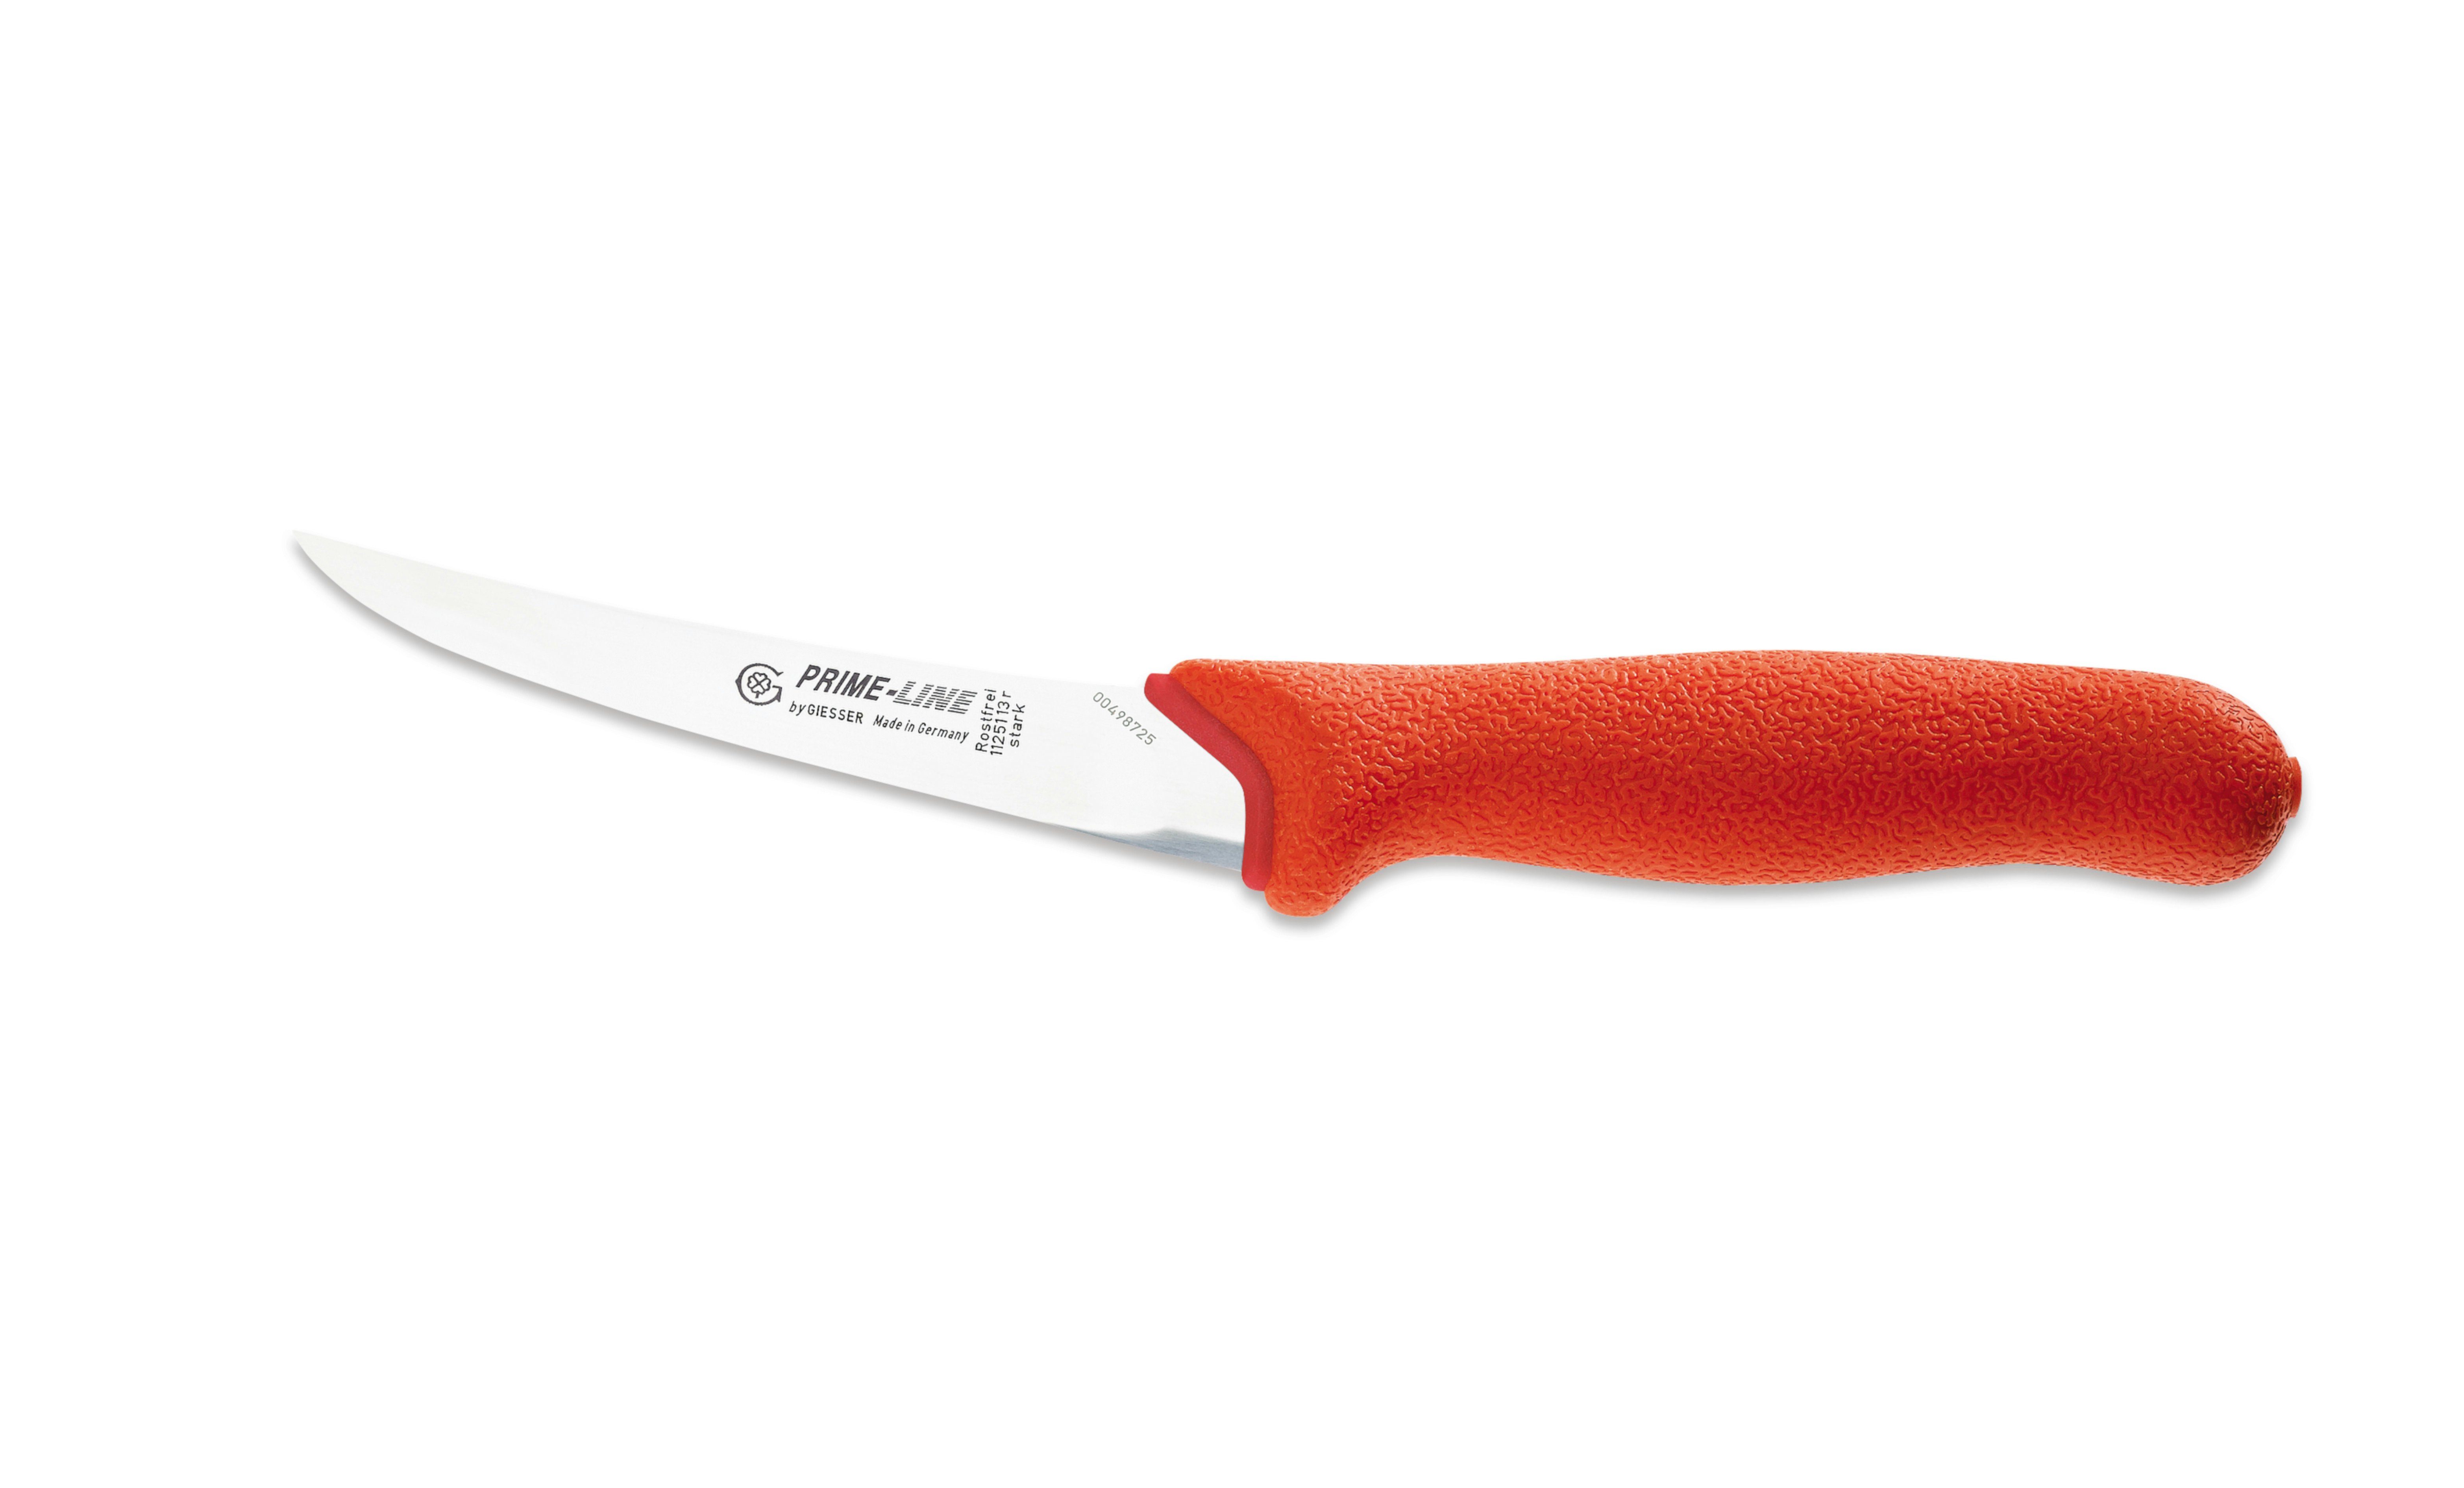 Giesser Messer Ausbeinmesser Fleischermesser 11250 13/15, PrimeLine, rutschfest, weicher Griff rot